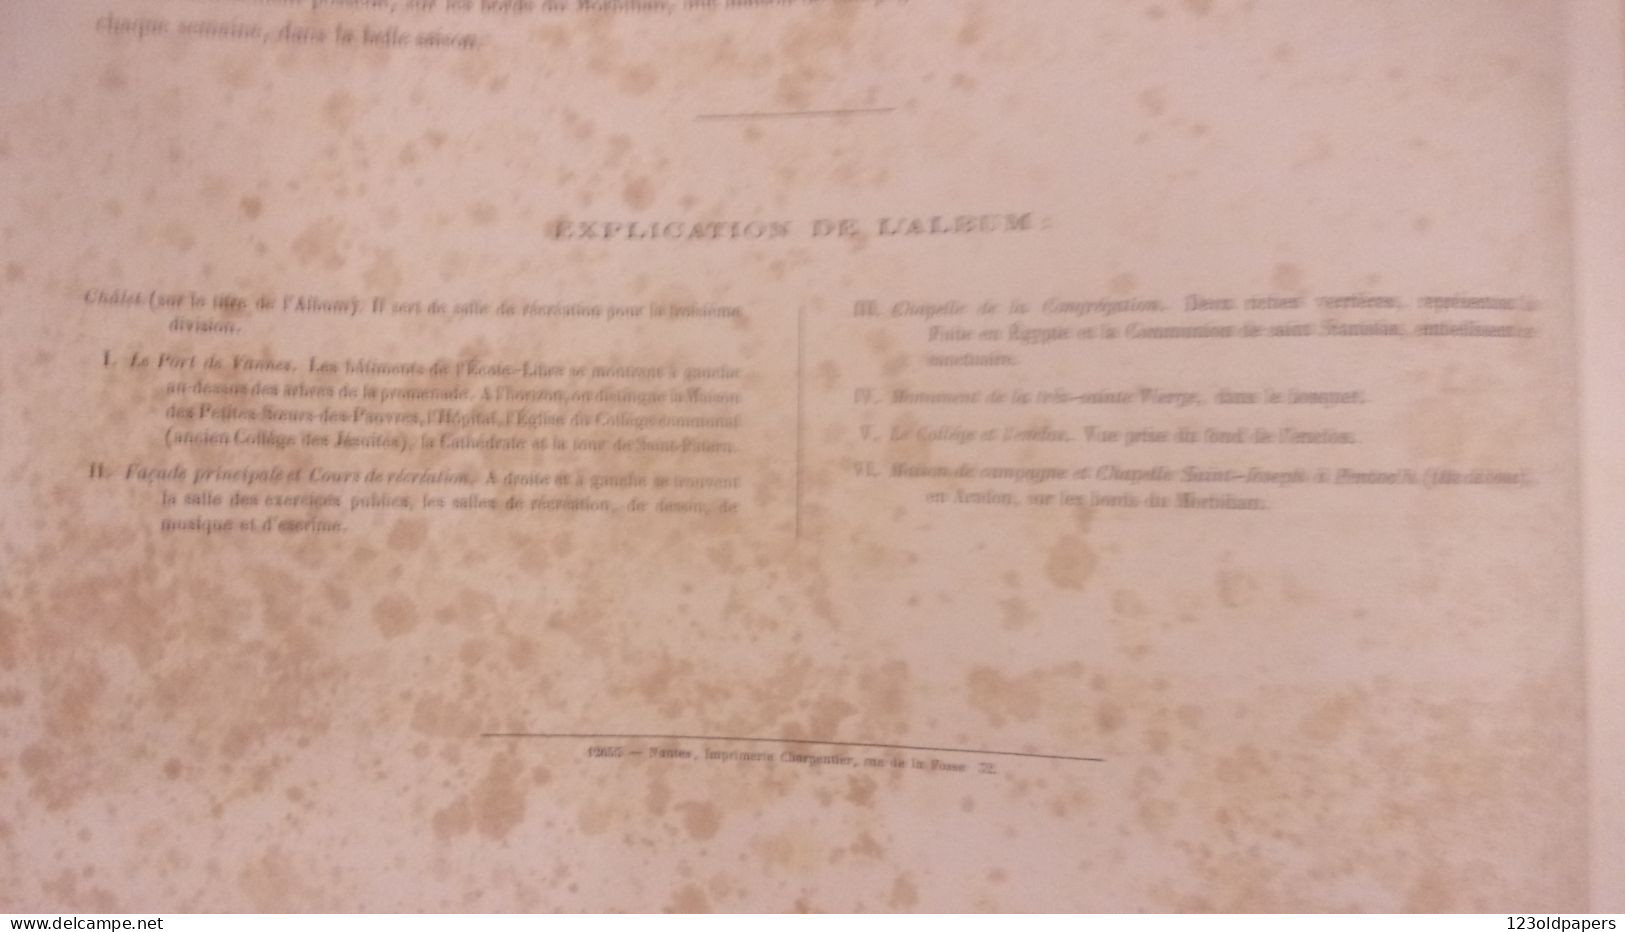 VANNES RARE ALBUM DE 6 LITHOGRAPHIES 1865 CHARPENTIER ECOLE LIBRE ST FRANCOIS XAVIER DESSINE PAR FELIX BENOIST